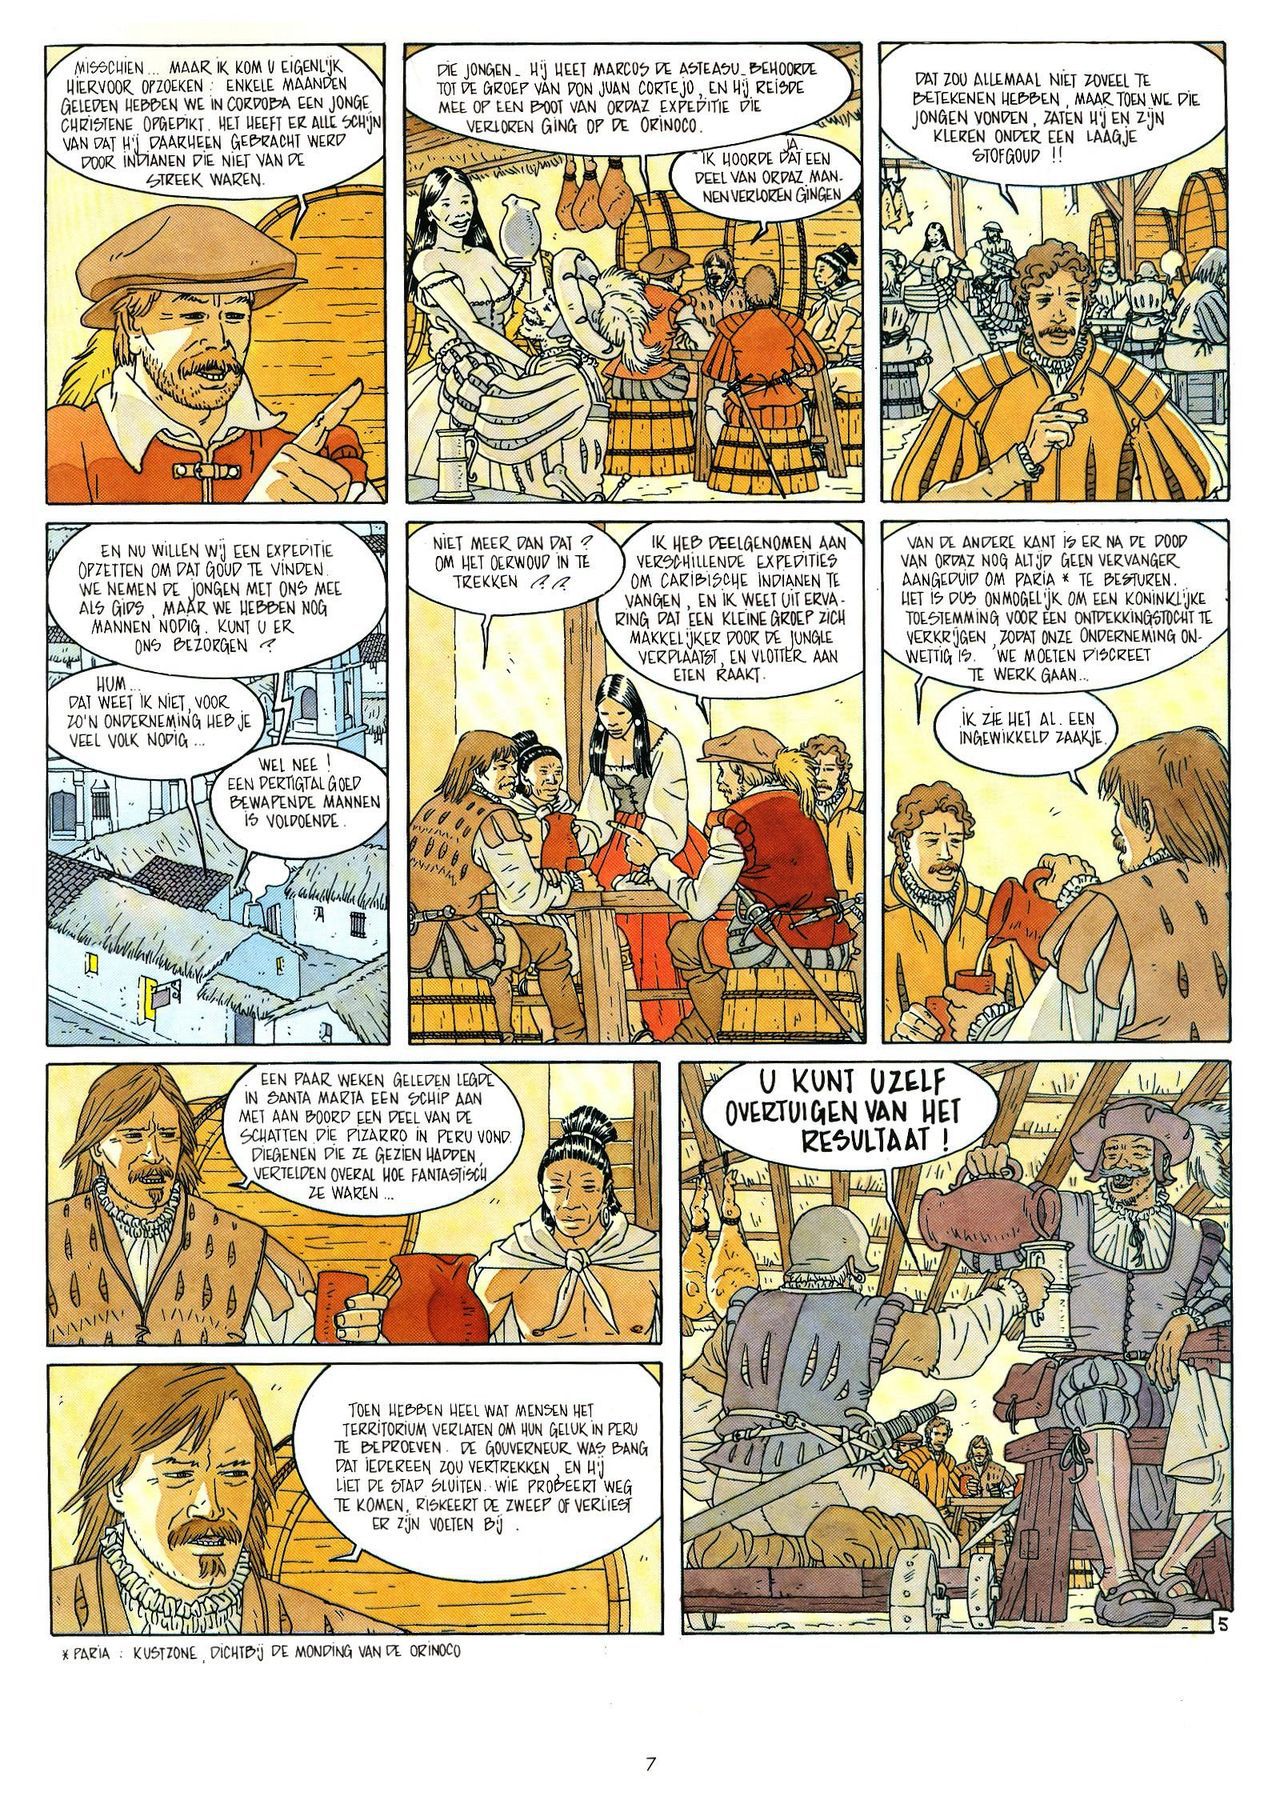 Eldorado - 03 - De Jaguarmensen (Dutch) Franstalige strips die op deze site staan, hier is de Nederlandse uitgave! 7